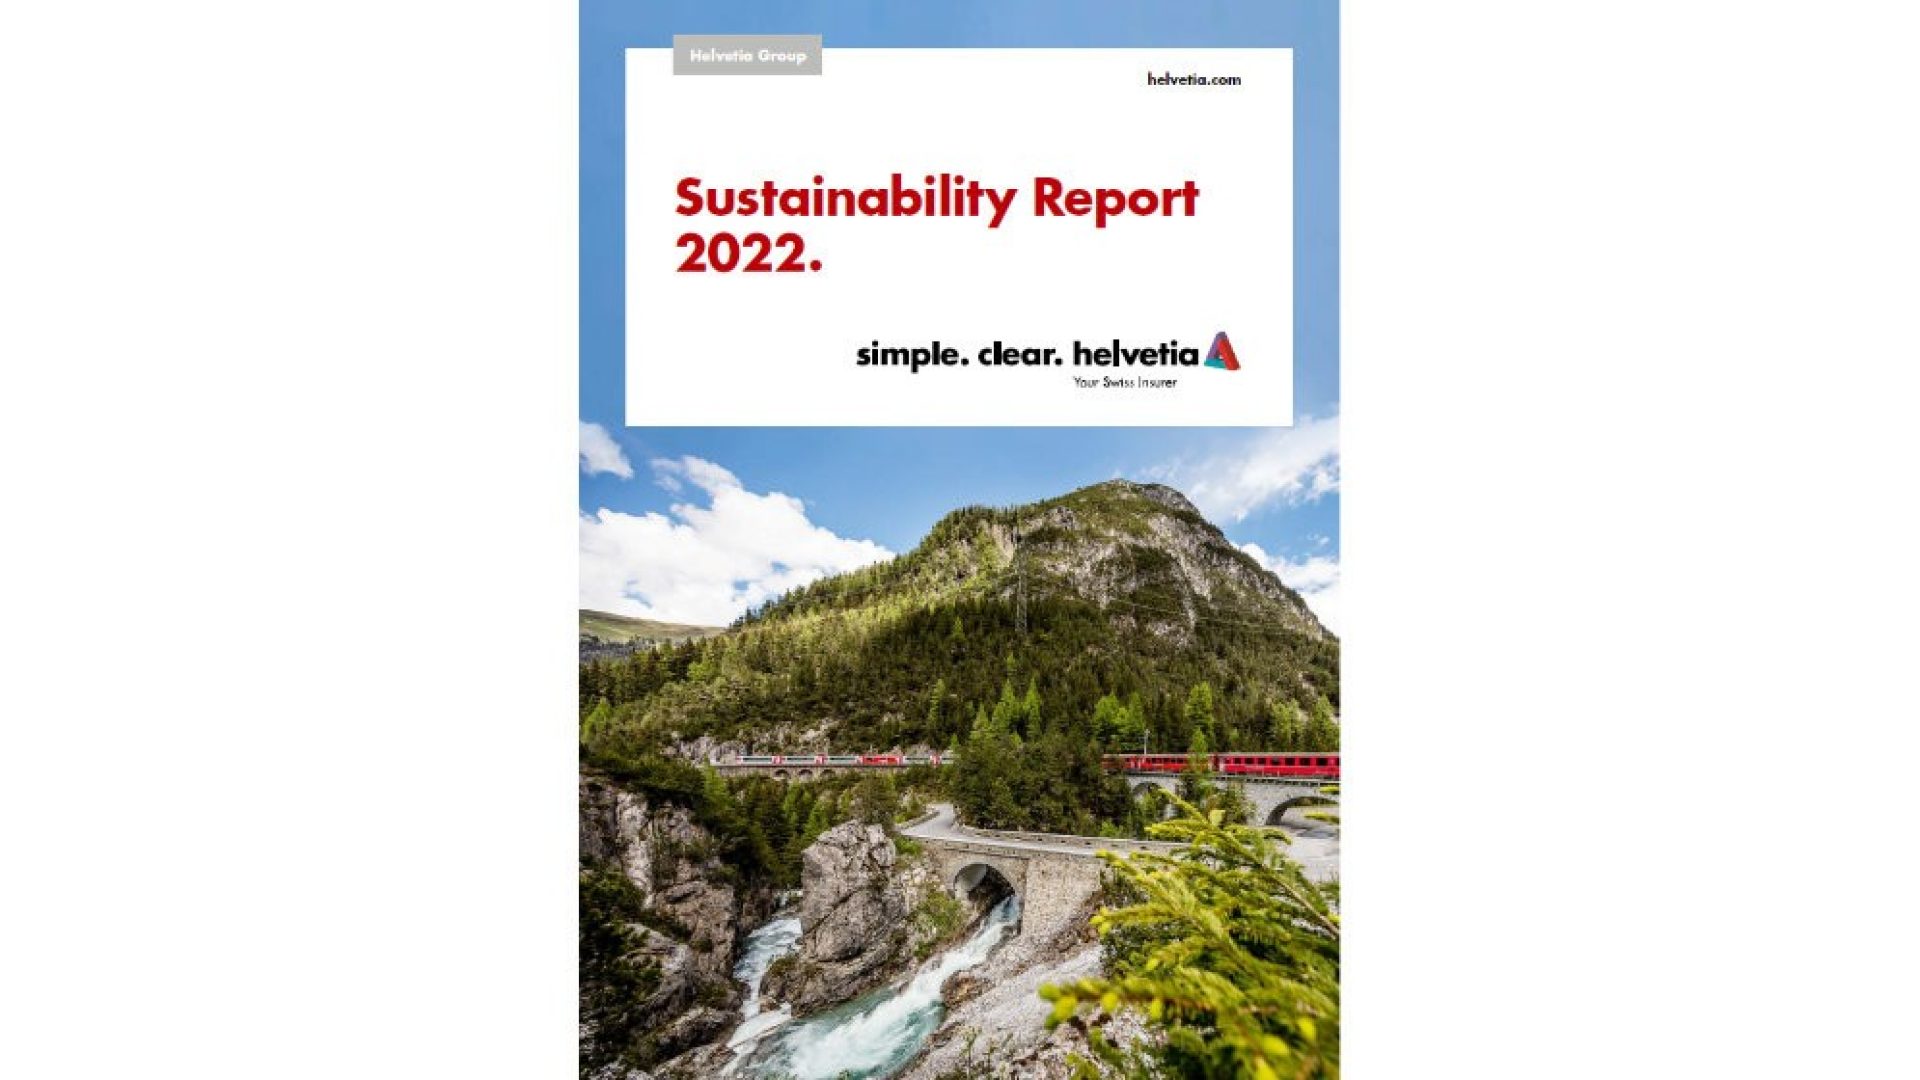 sustainability-report-helvetia-2022-01